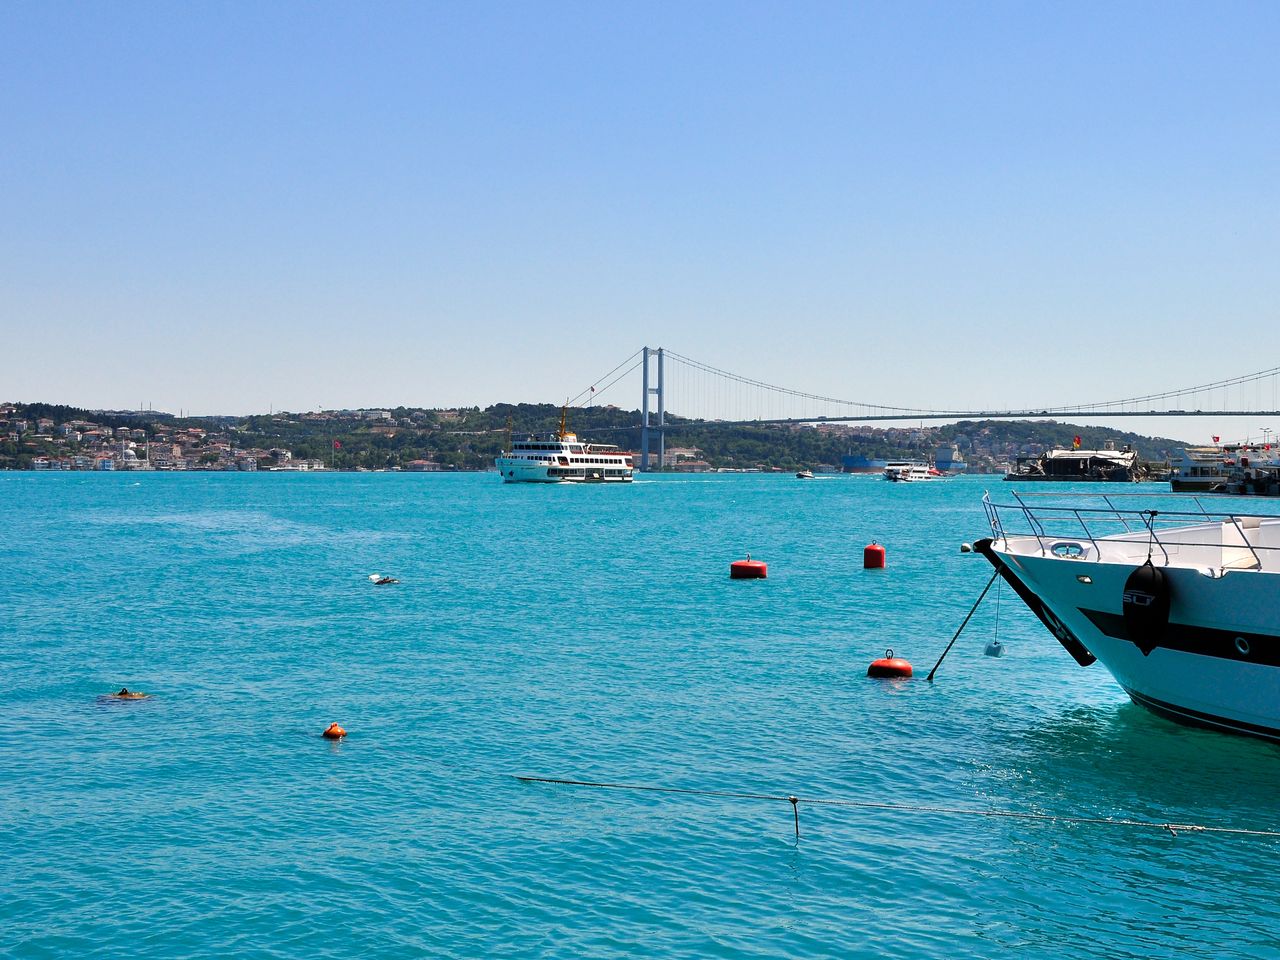 Босфор-тур на яхте в Стамбуле  | Цена 570€, отзывы, описание экскурсии